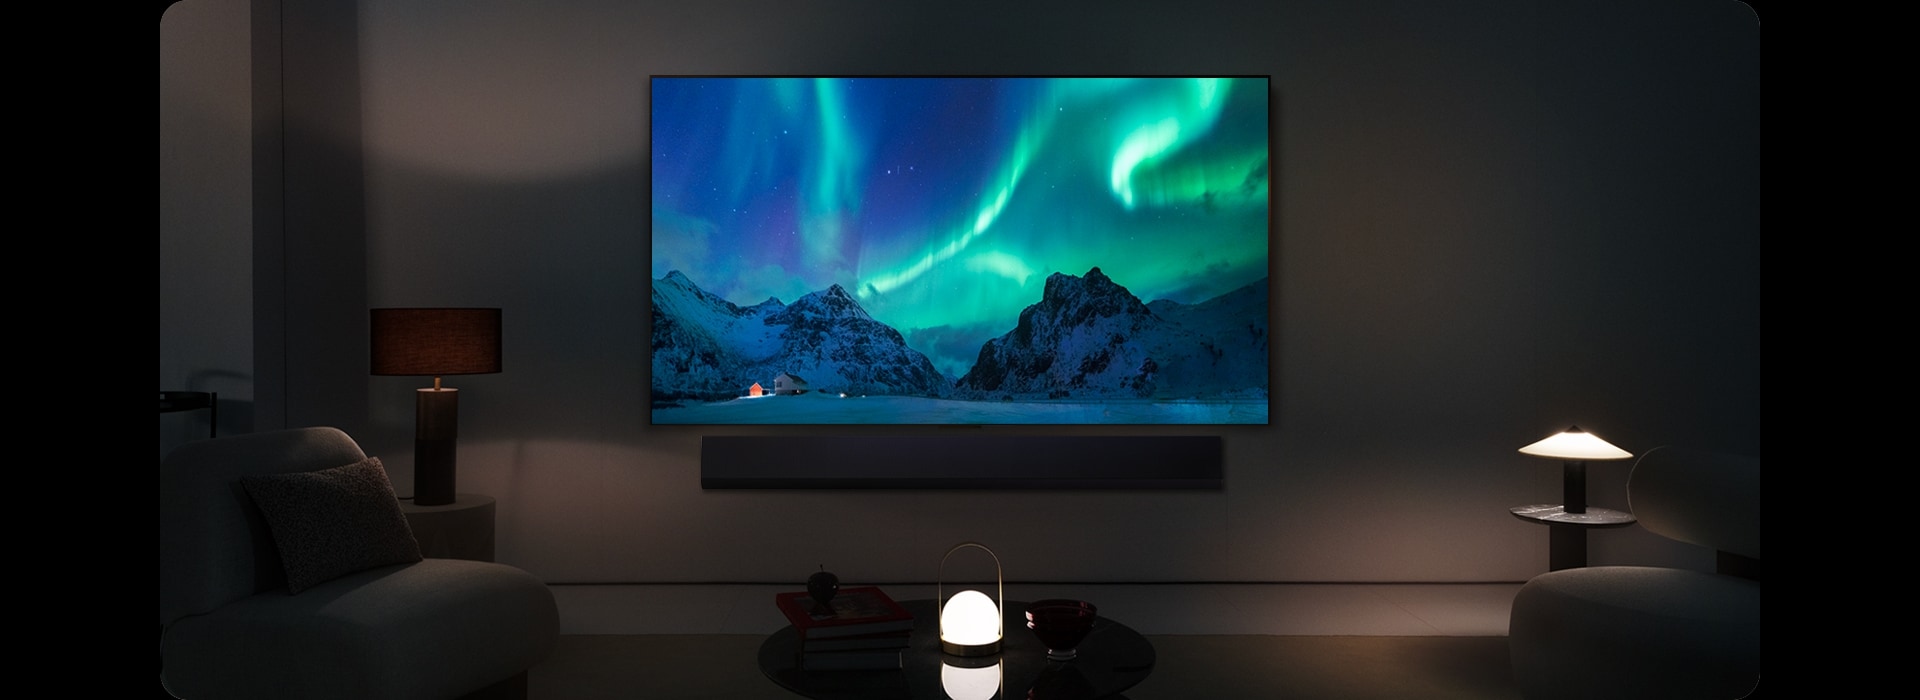 El televisor LG OLED evo y una barra de sonido LG en un espacio moderno durante la noche. La imagen de la aurora boreal se muestra con los niveles de brillo ideales.